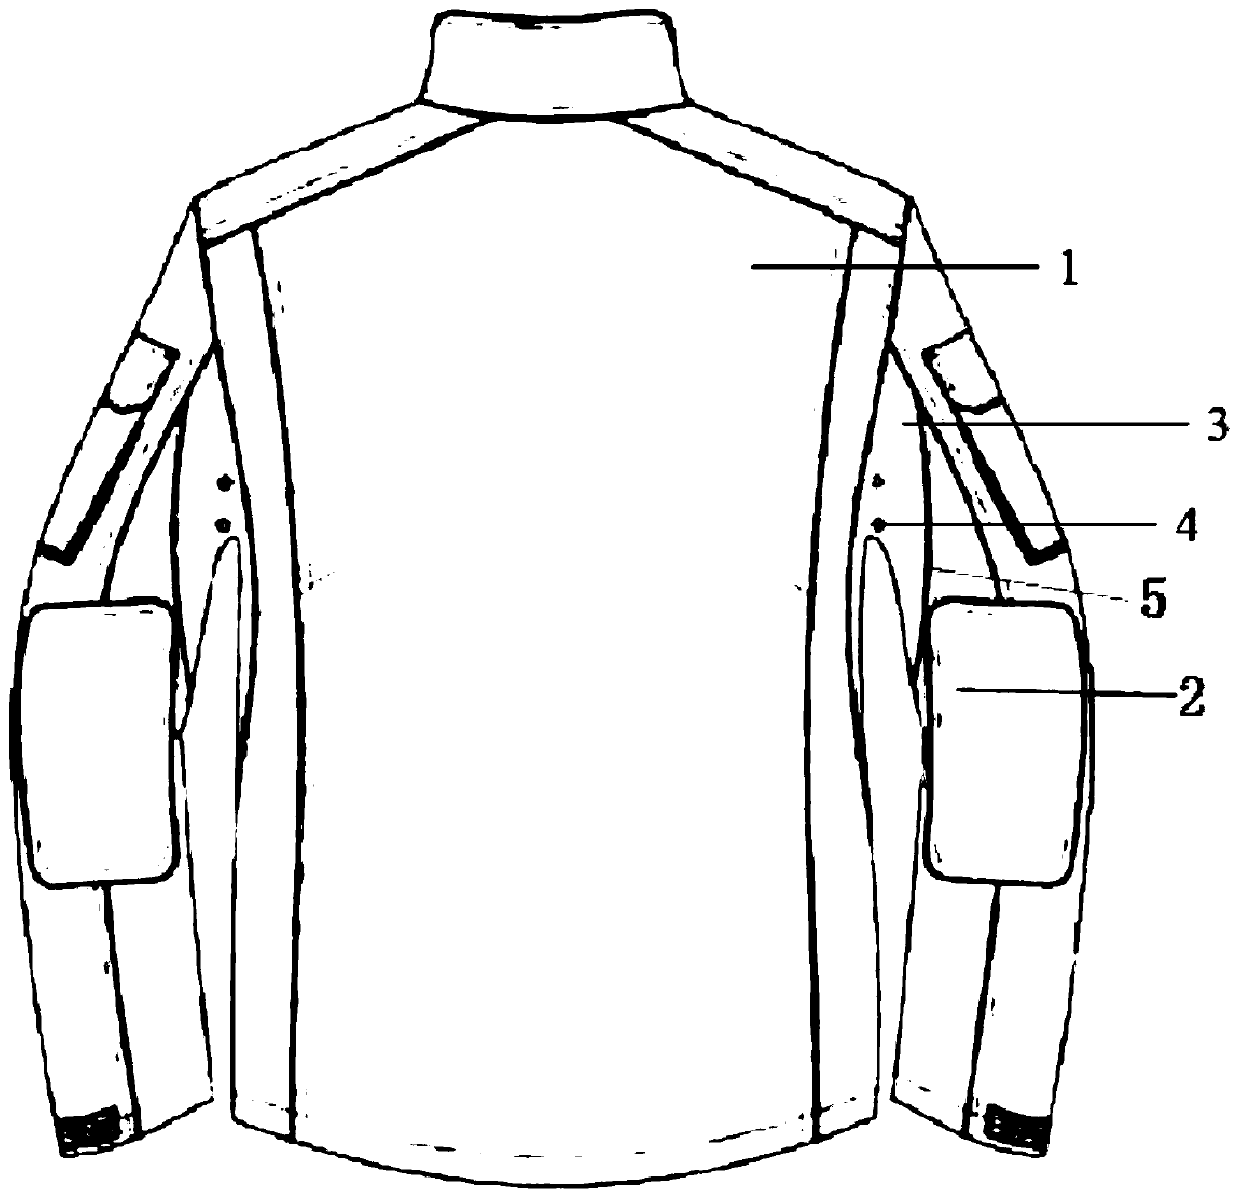 Clothes armpit structure